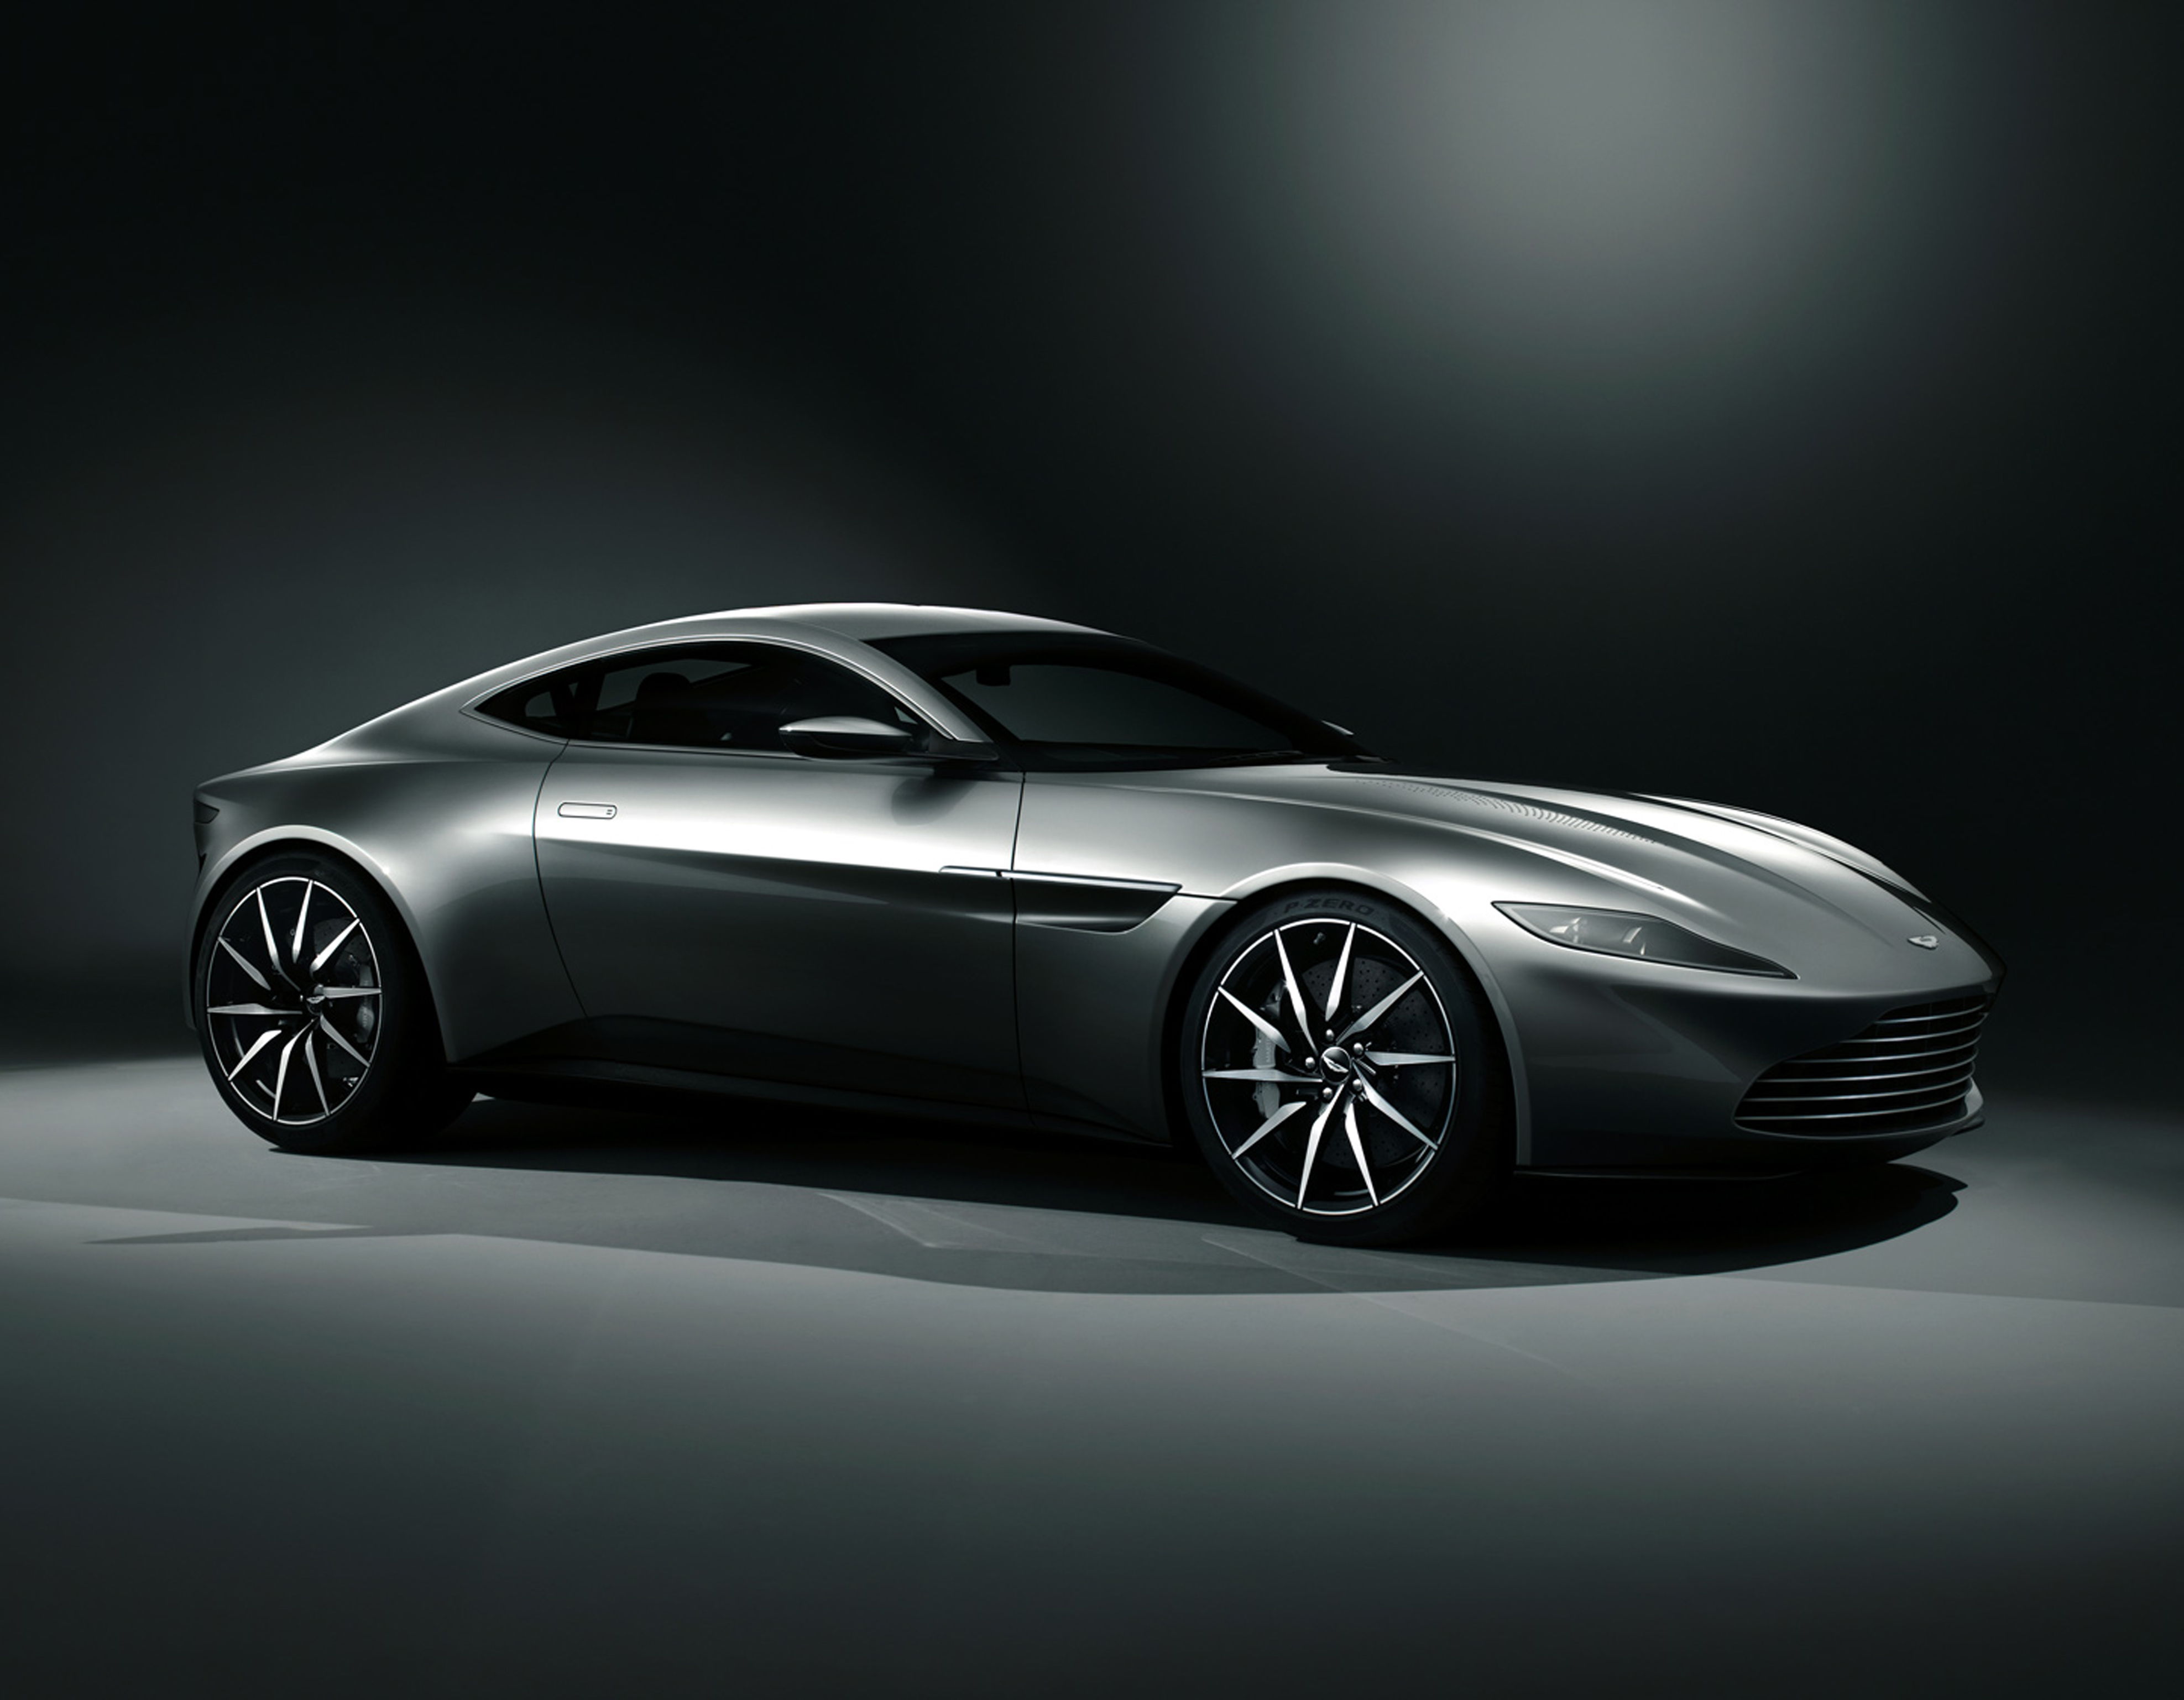 Crean Aston Martin especialmente para Bond